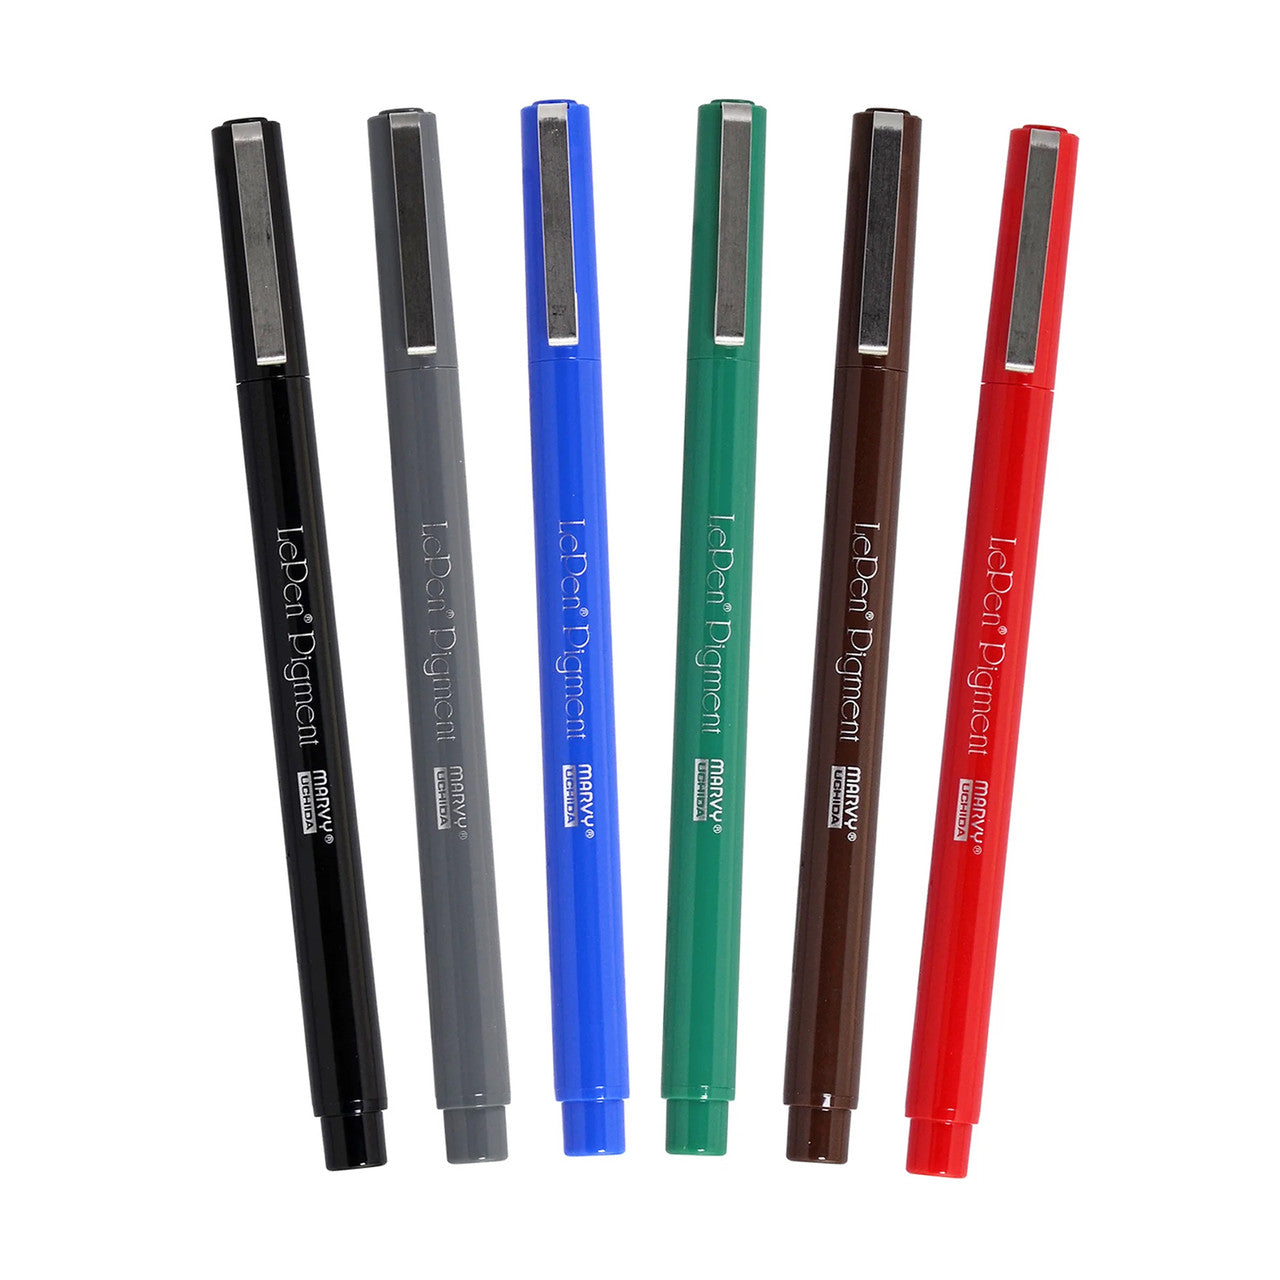 Le Pen Pigment - Set de 6 - Primary Colors